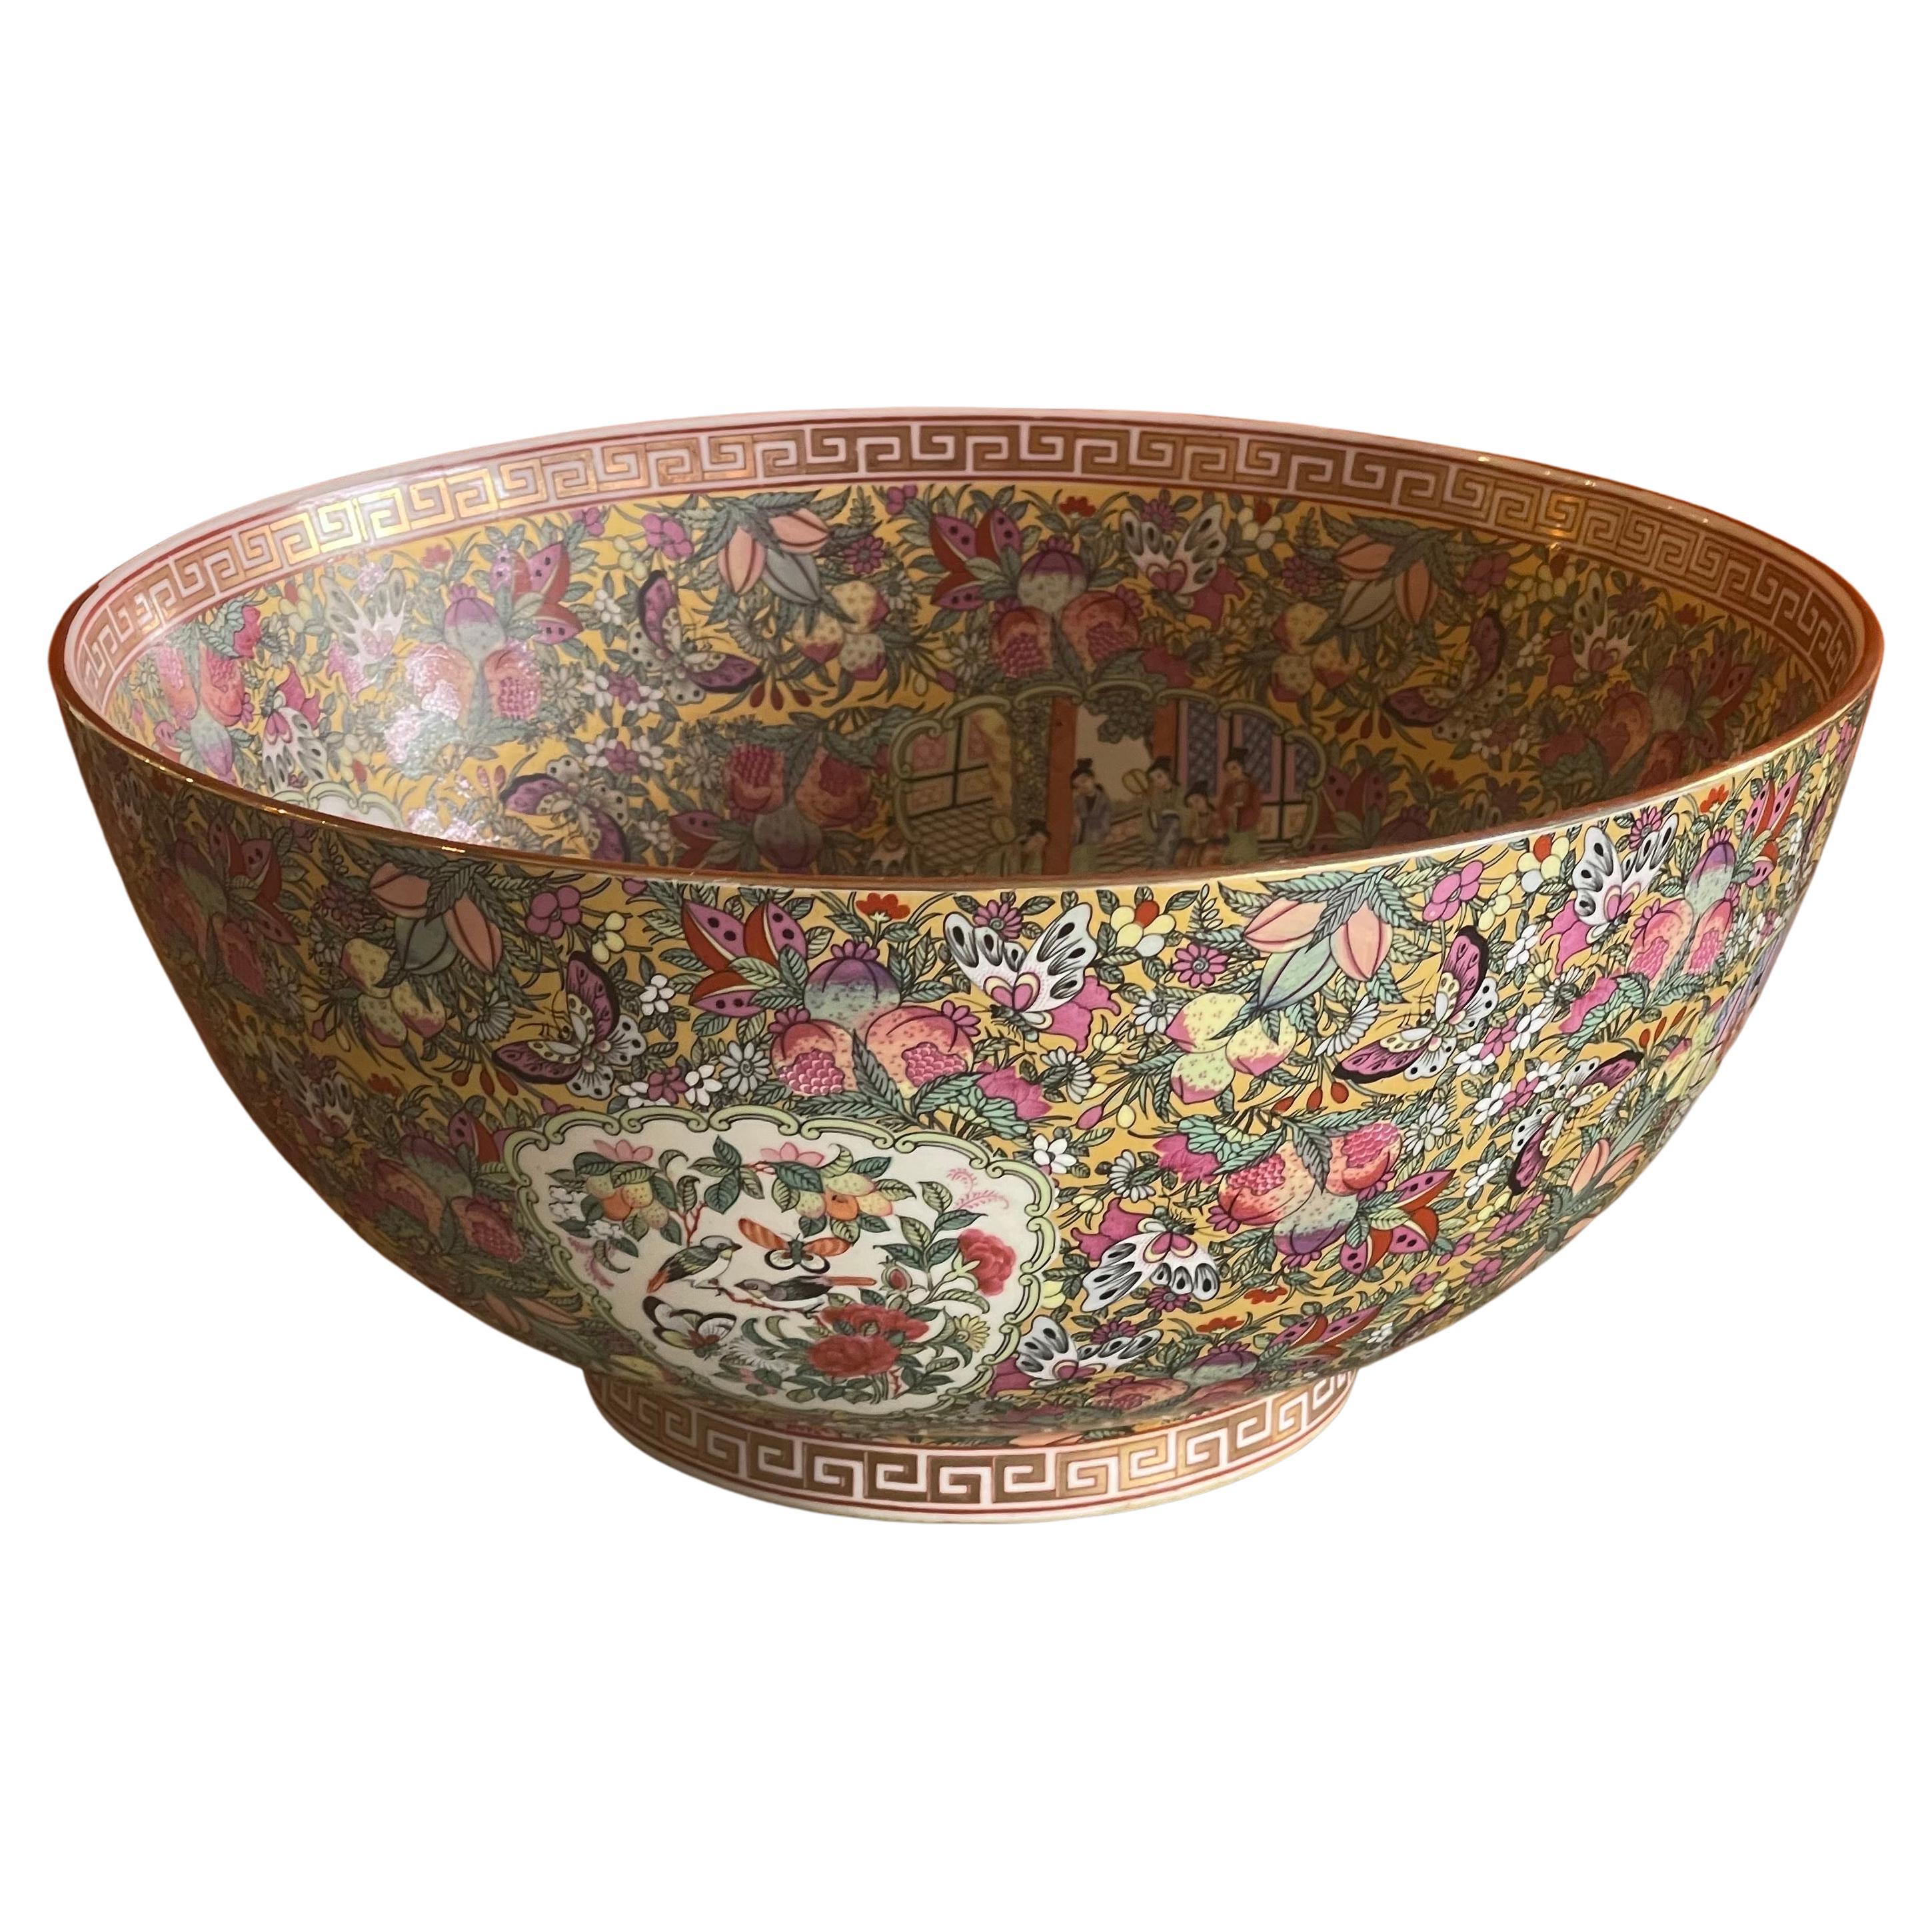 Grand bol en porcelaine d'exportation chinoise peint à la main avec médaillon de rose